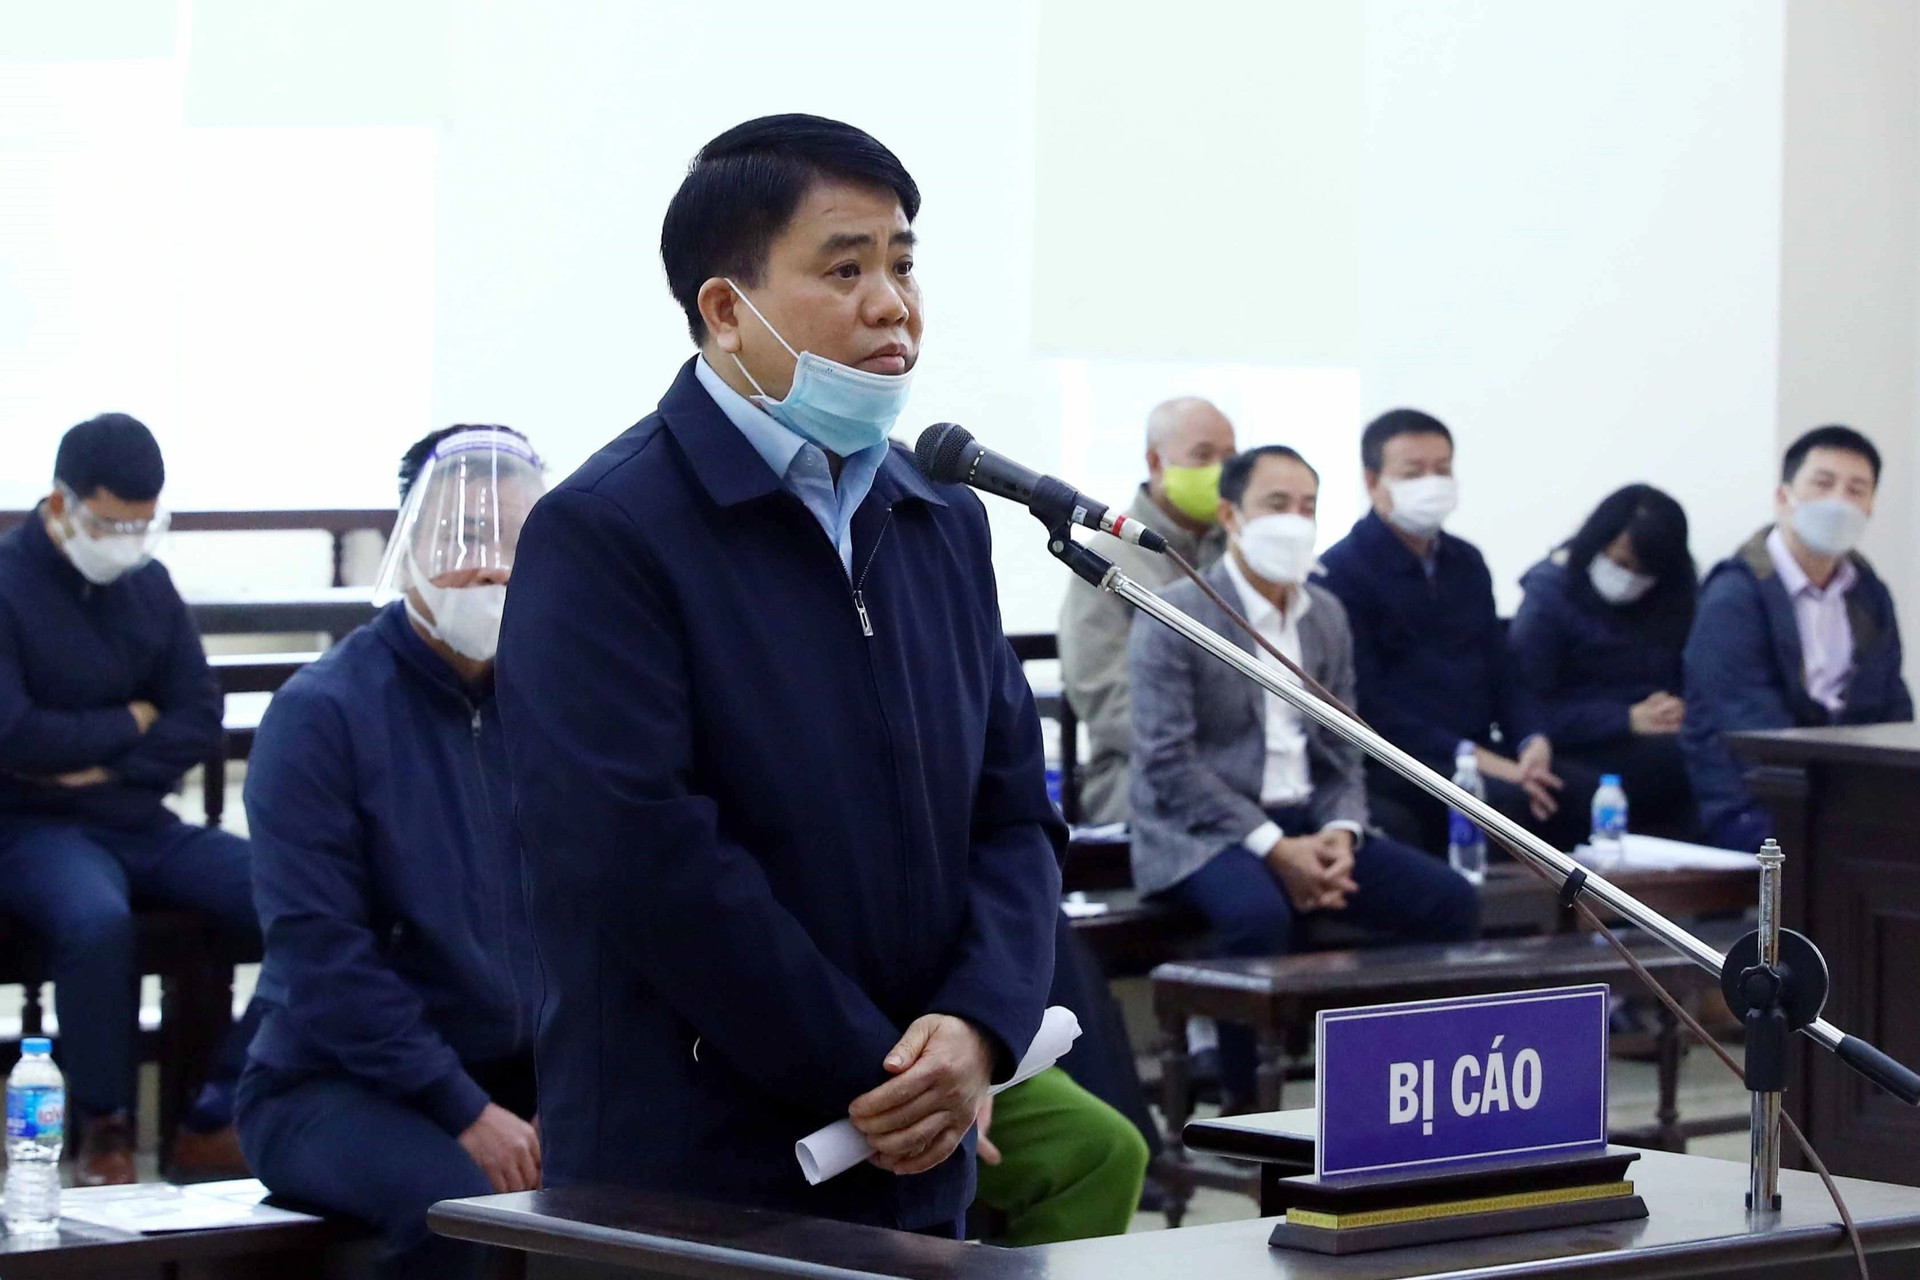 Bất ngờ nộp 10 tỷ đồng, ông Nguyễn Đức Chung được đề nghị giảm án - 1